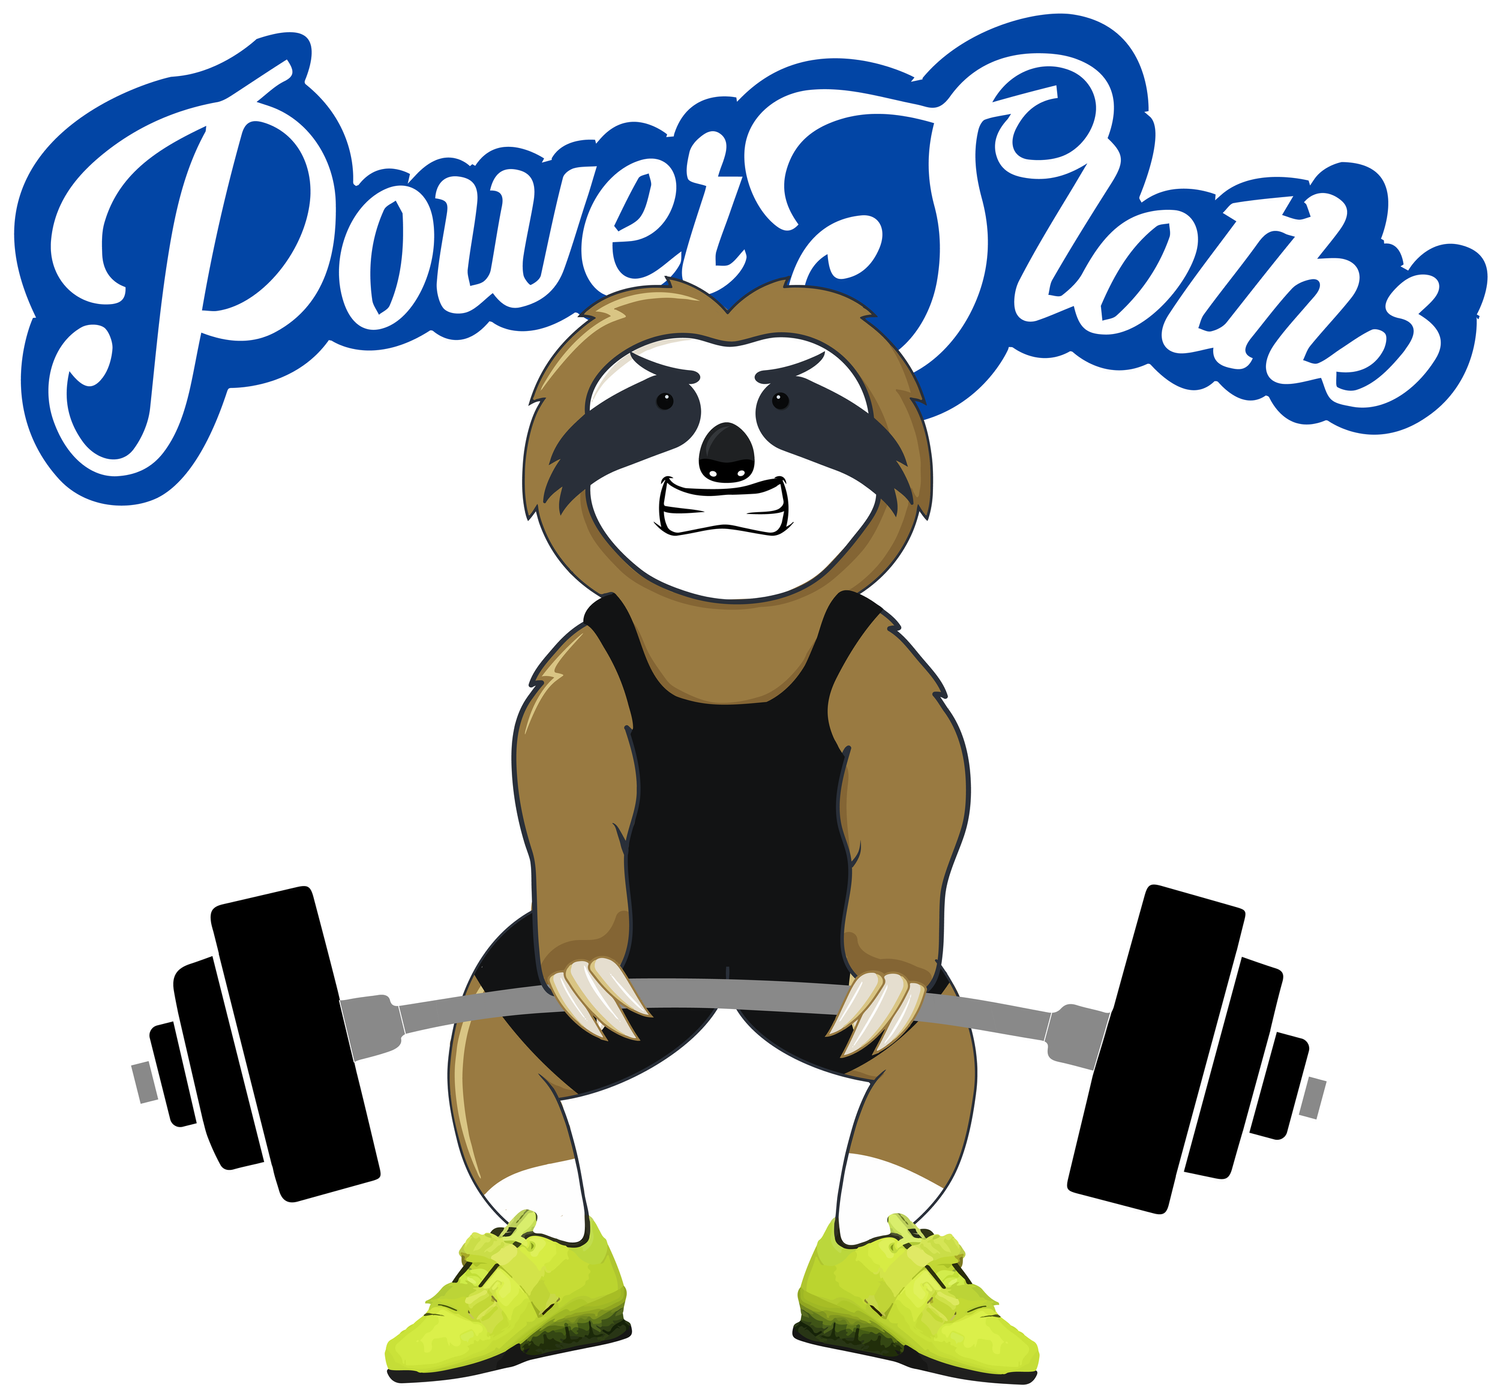 Power Sloths